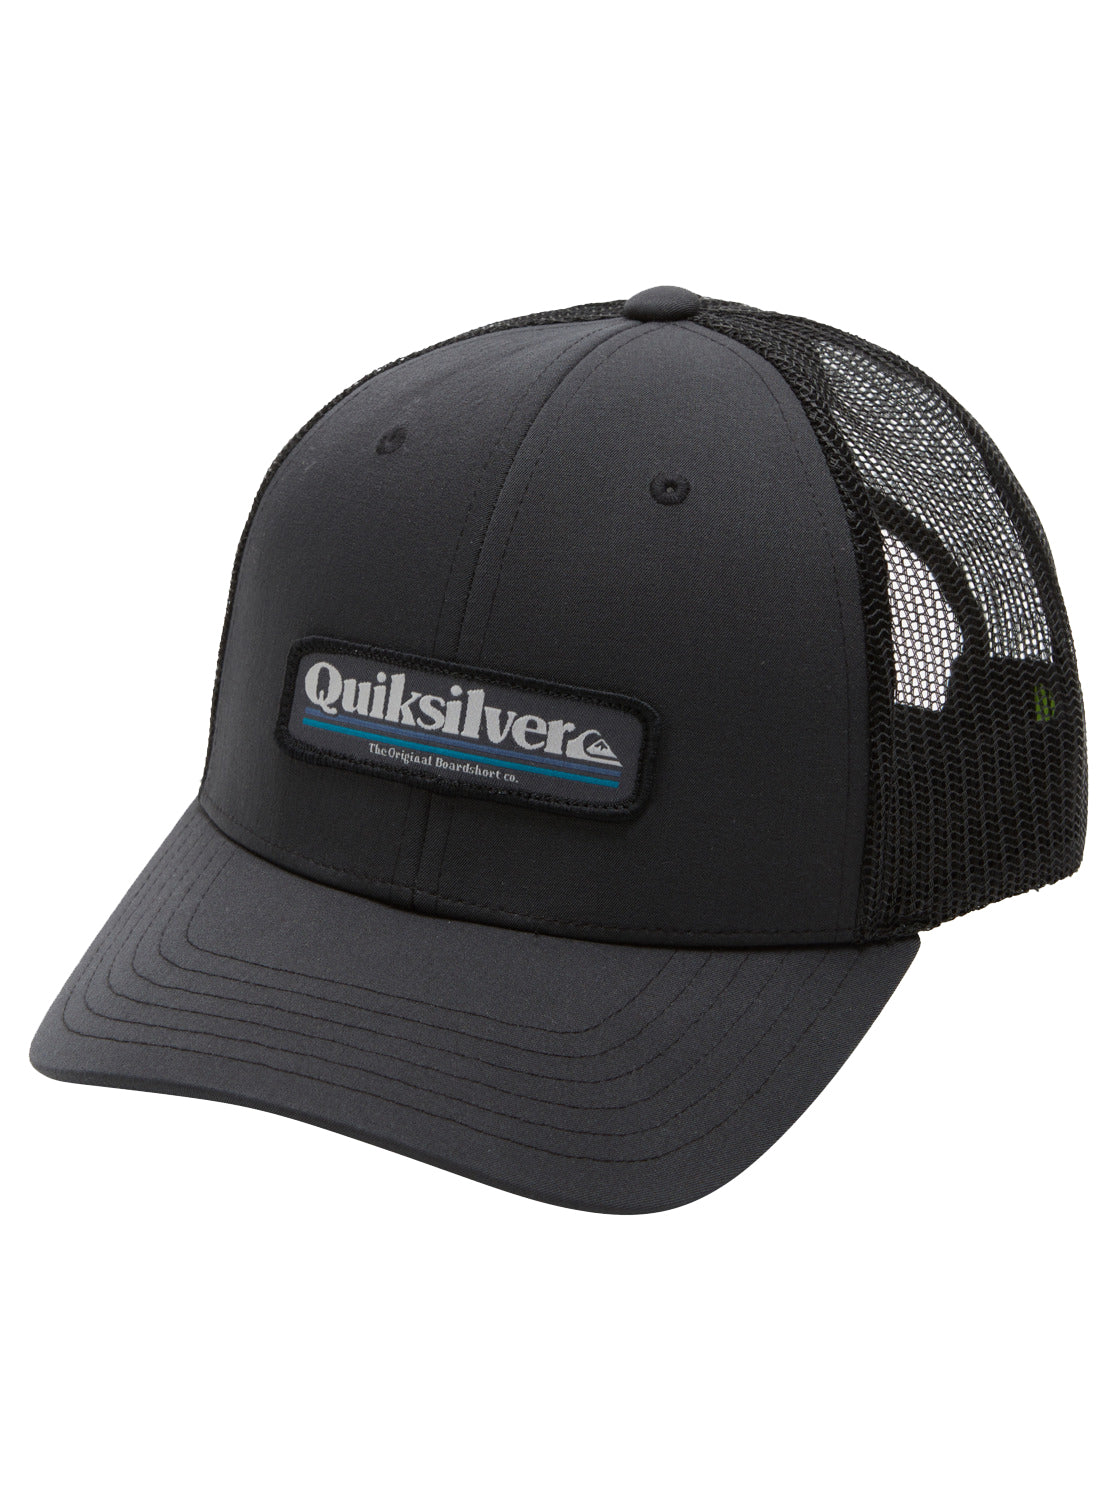 Quiksilver Stern catch Trucker Hat